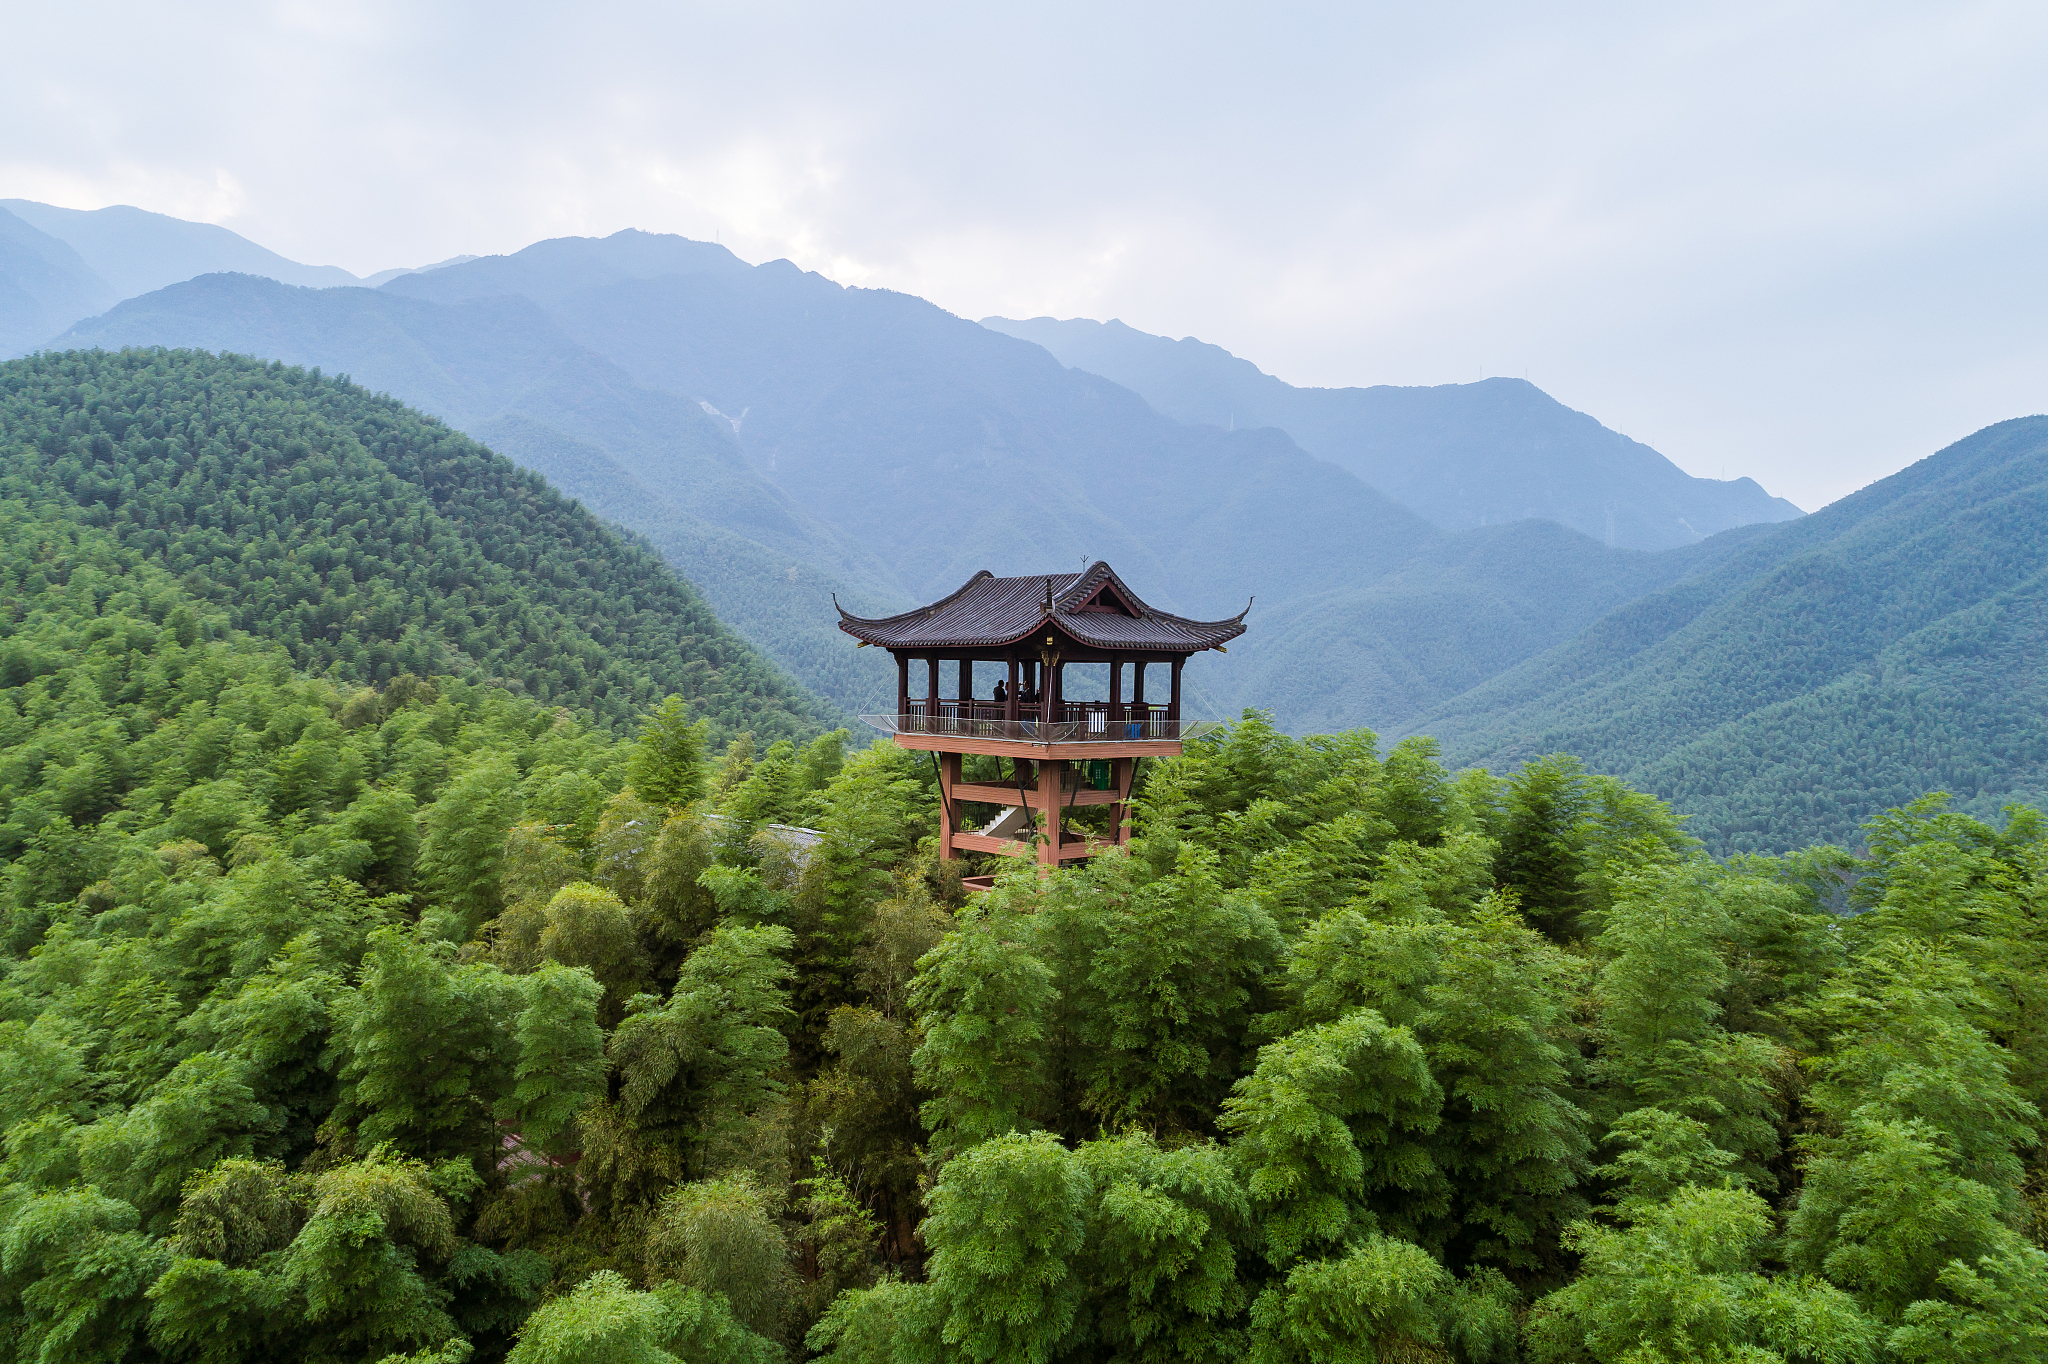 万载县位于江西省中部,是一个自然风光优美,人文历史悠久的地方